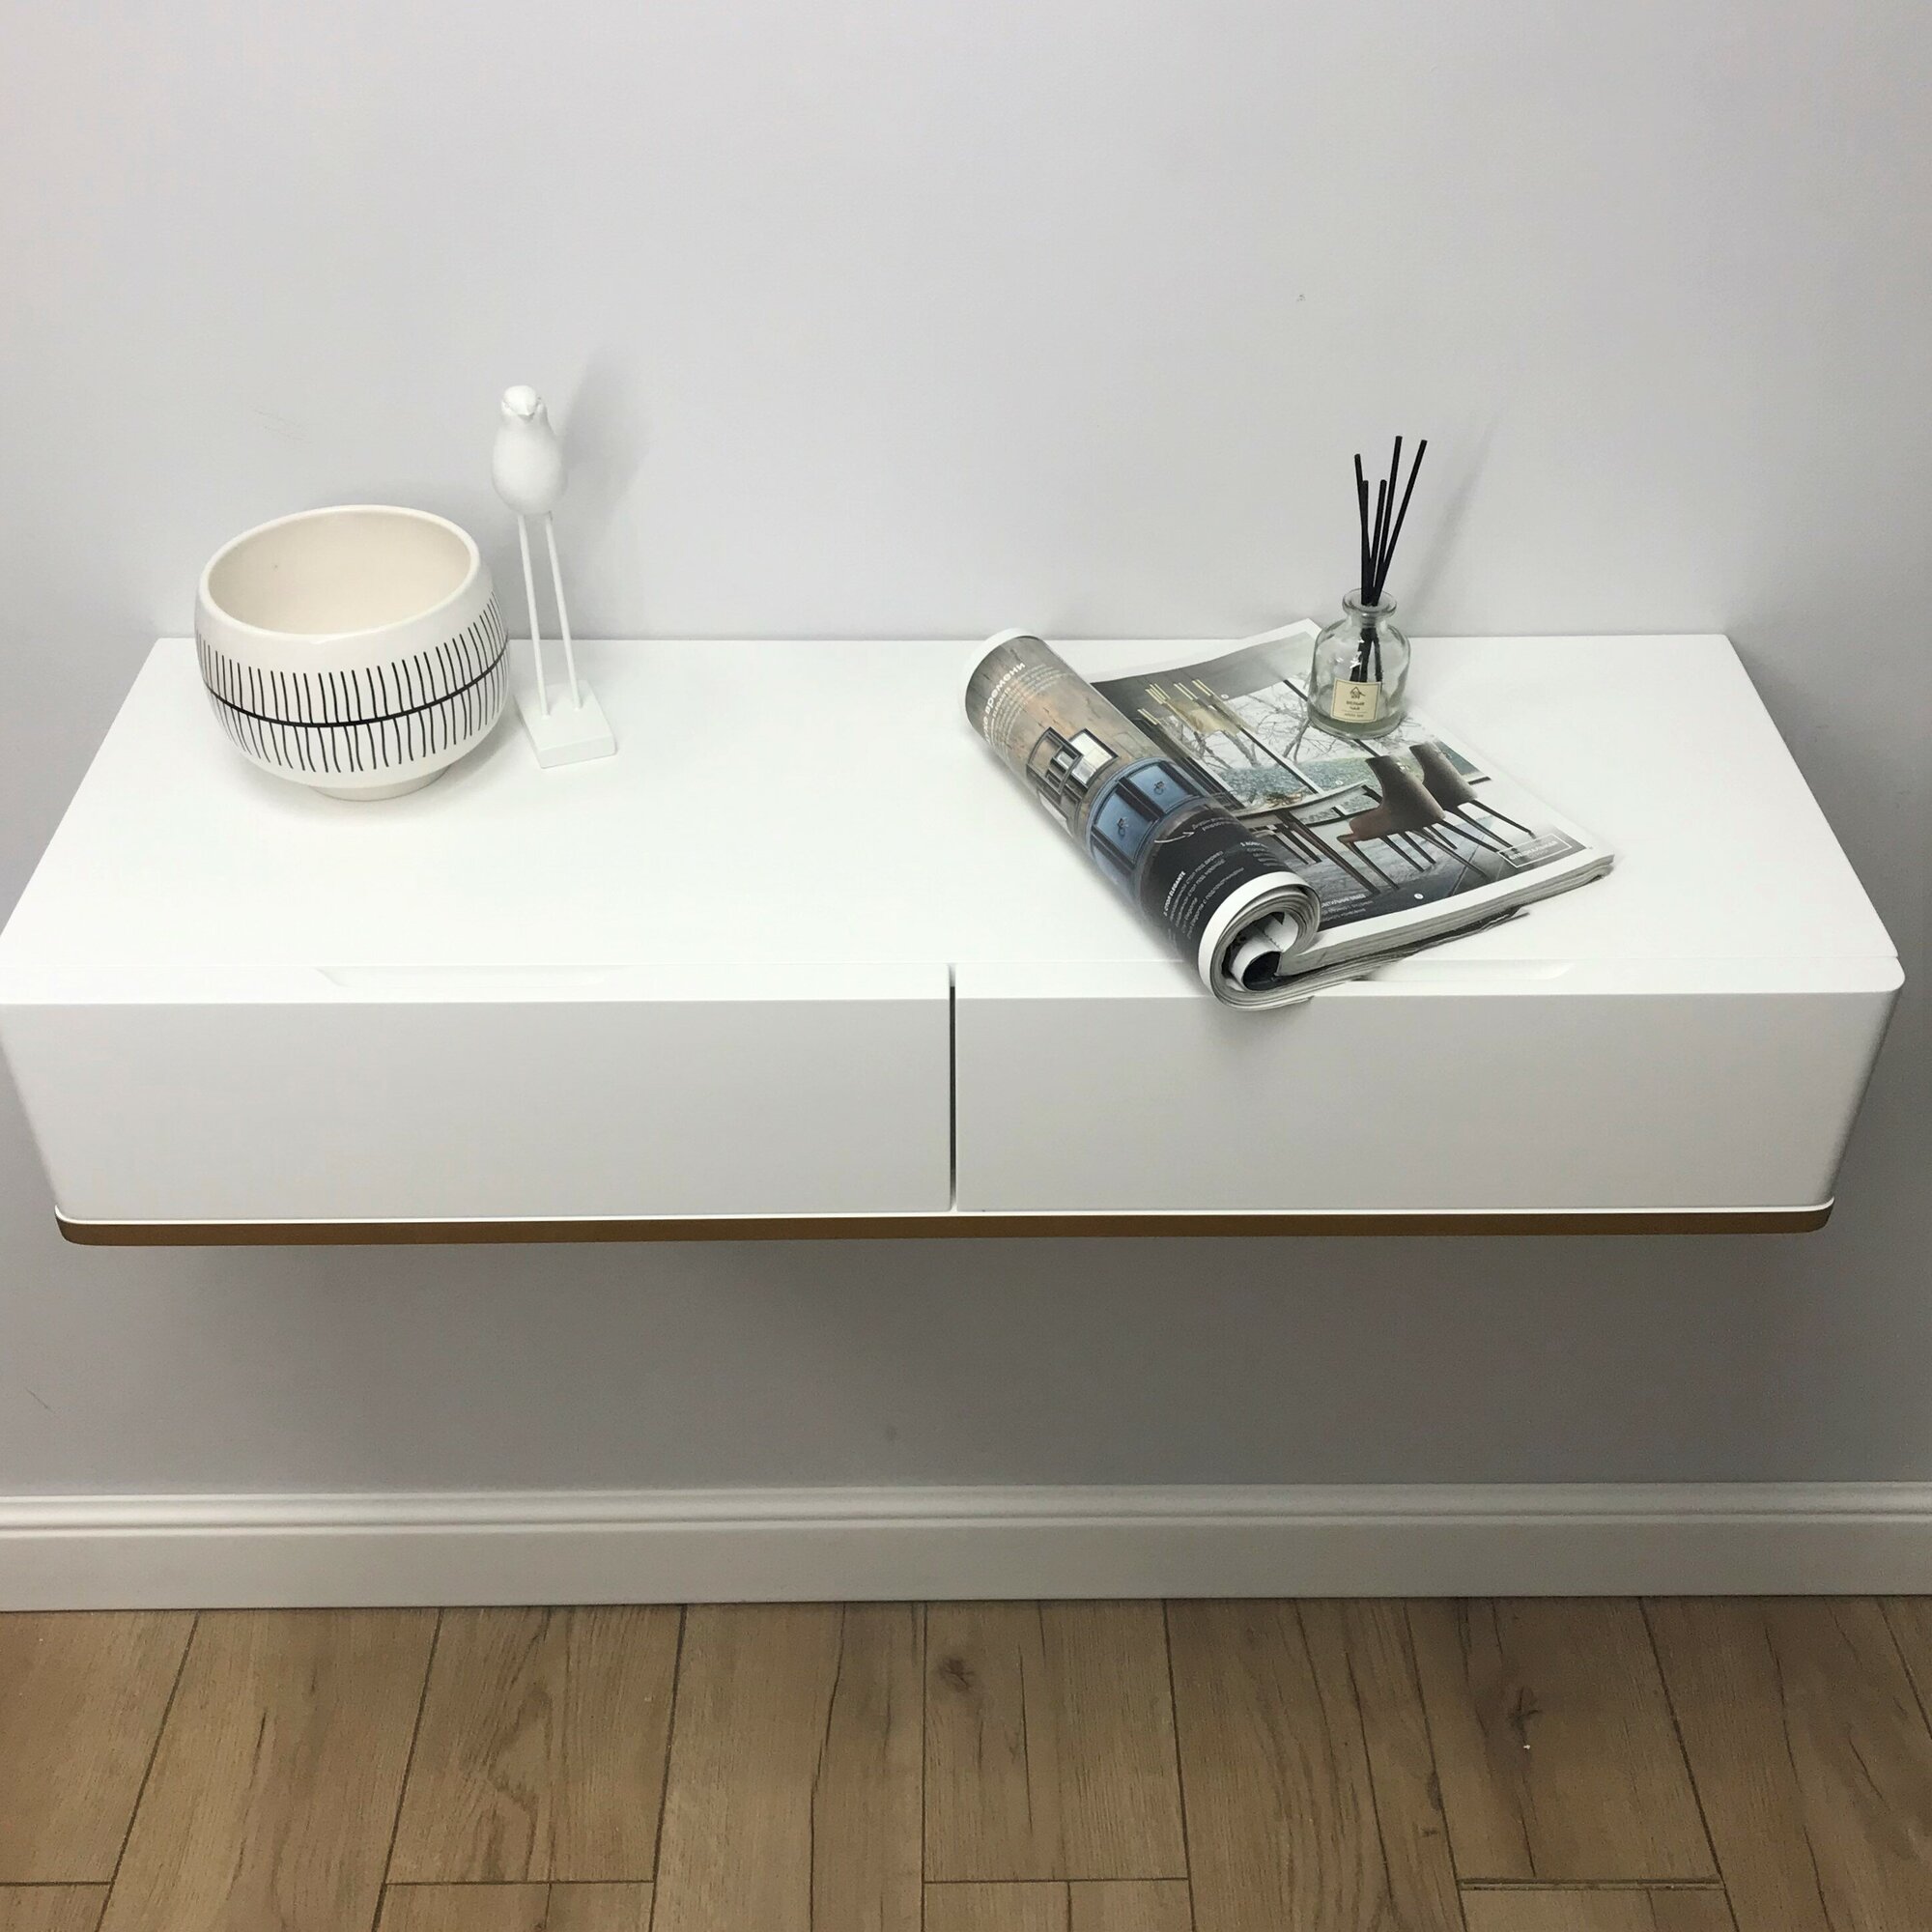 Туалетный столик в эмали подвесной, Bianko консольный столик, консоль навесная белая 100х32х16 см. Дизайнерская мебель Grande House - фотография № 9